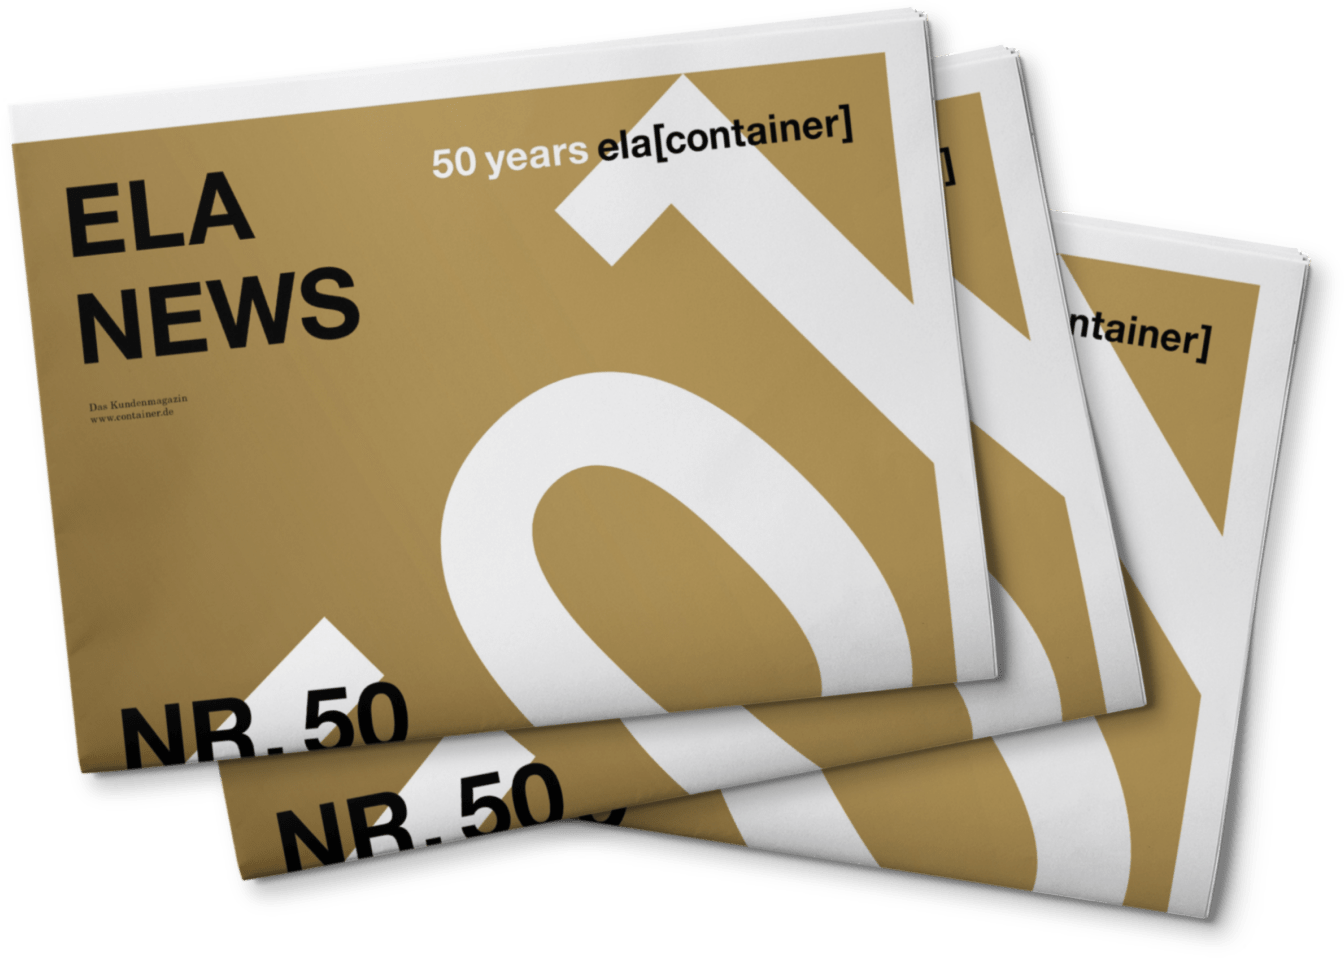 ELA News 50